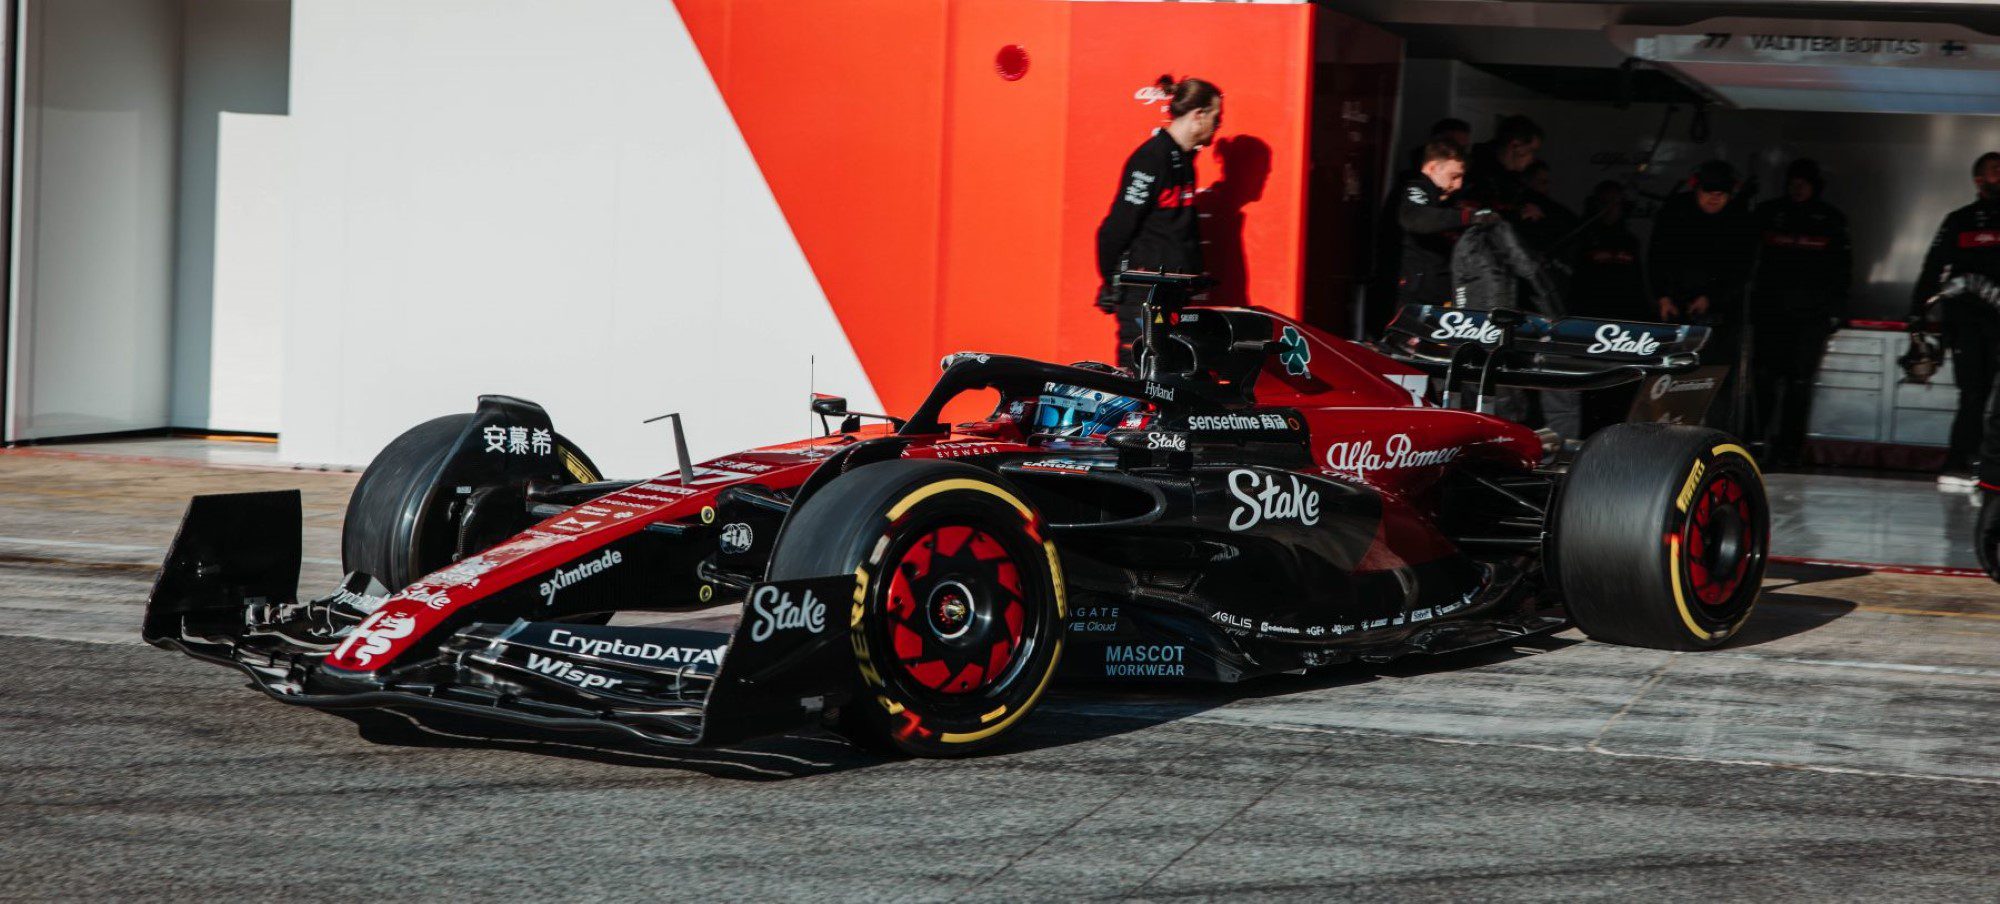 F1: Sauber emite comunicado sobre polêmica em torno do novo nome da equipe